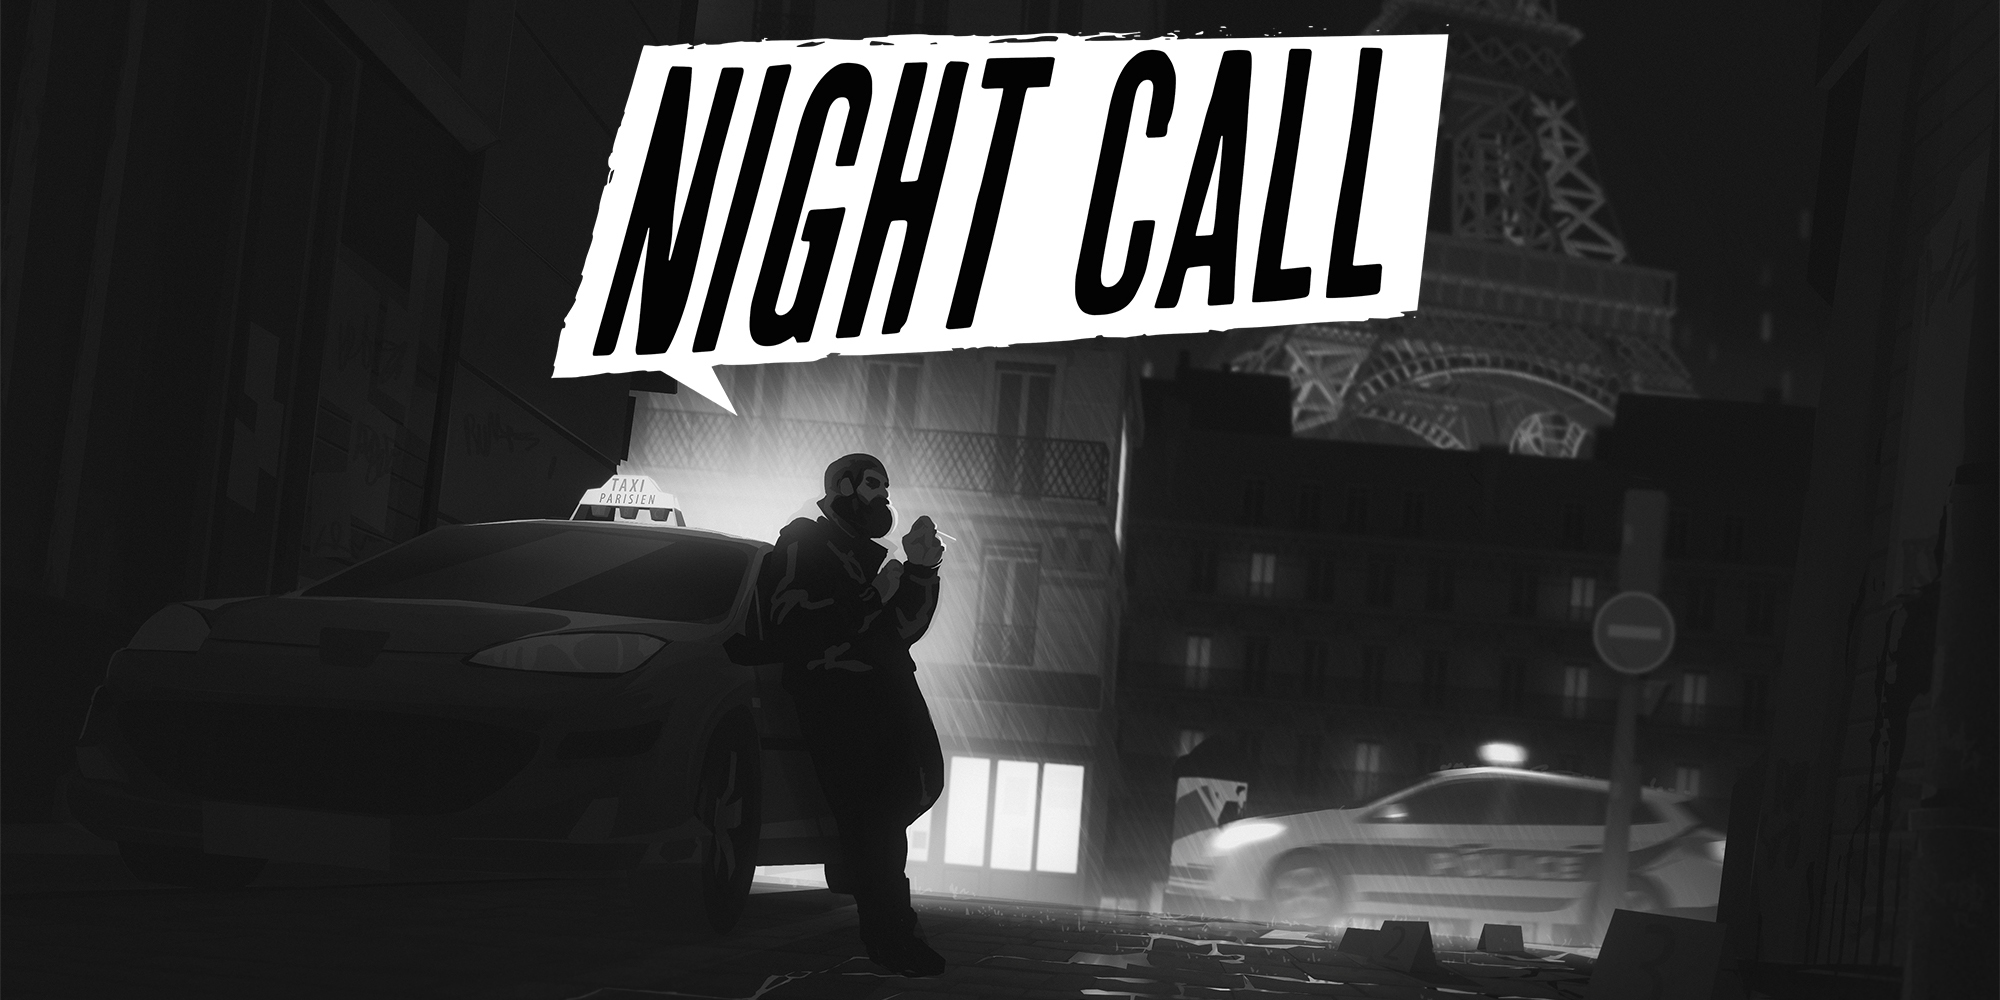 Call of Night